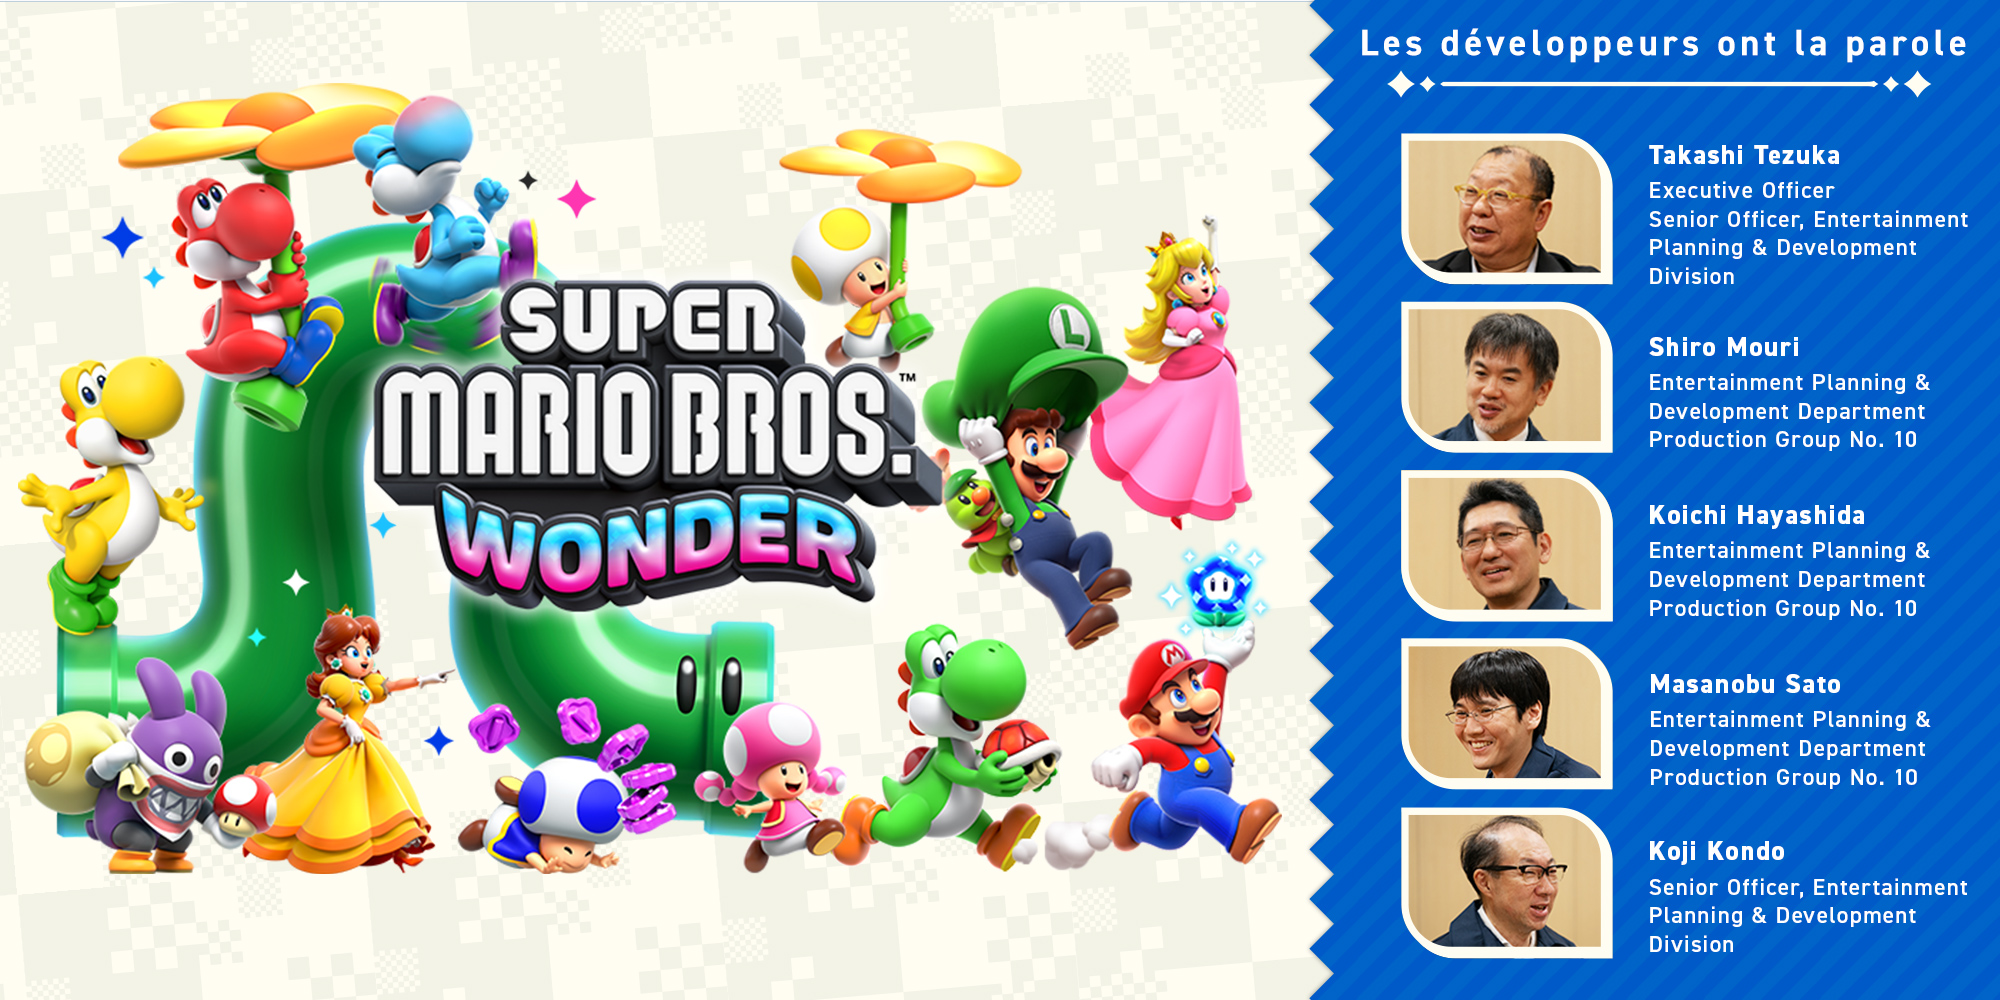 Les développeurs ont la parole, Vol. 11 : Super Mario Bros. Wonder – Chapitre 3